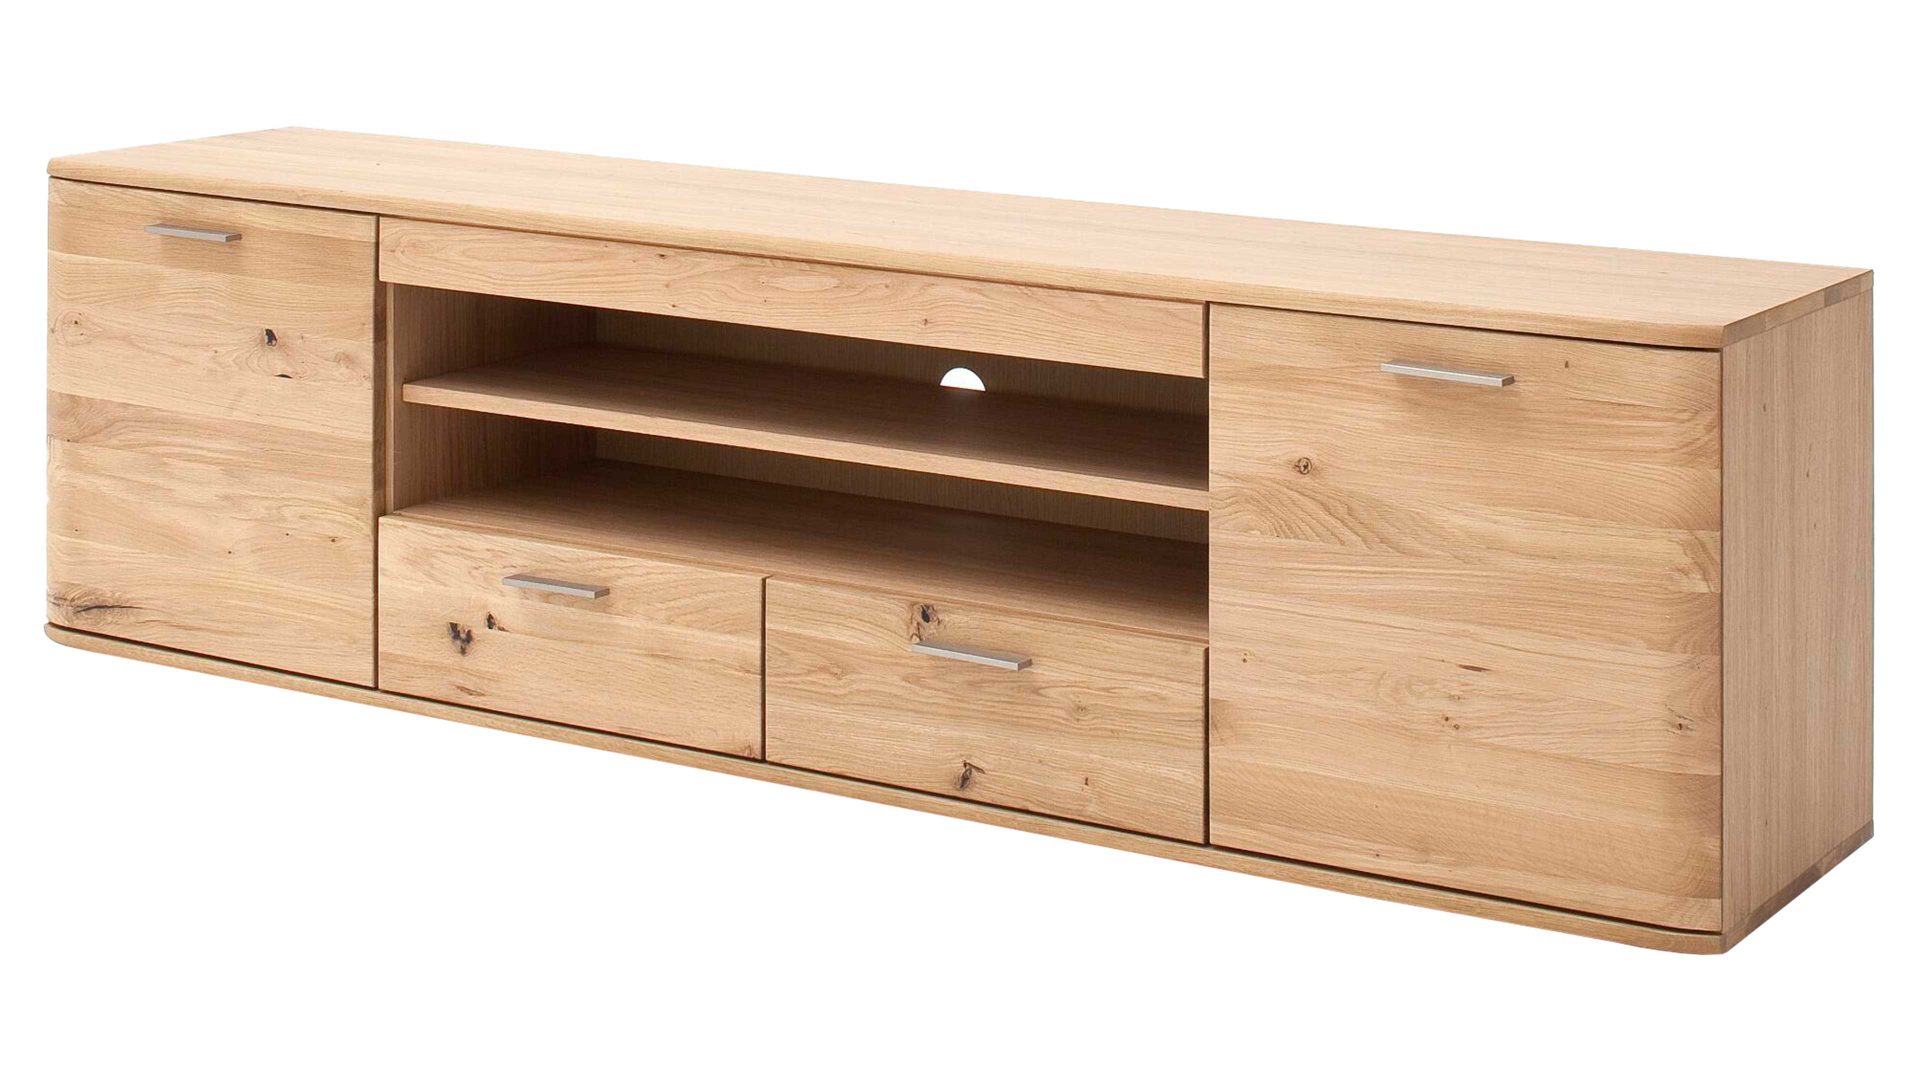 Lowboard Mca furniture aus Holz in Holzfarben Lowboard Nilo biancofarbene Balkeneiche – zwei Türen, zwei Schubladen, zwei offene Fächer